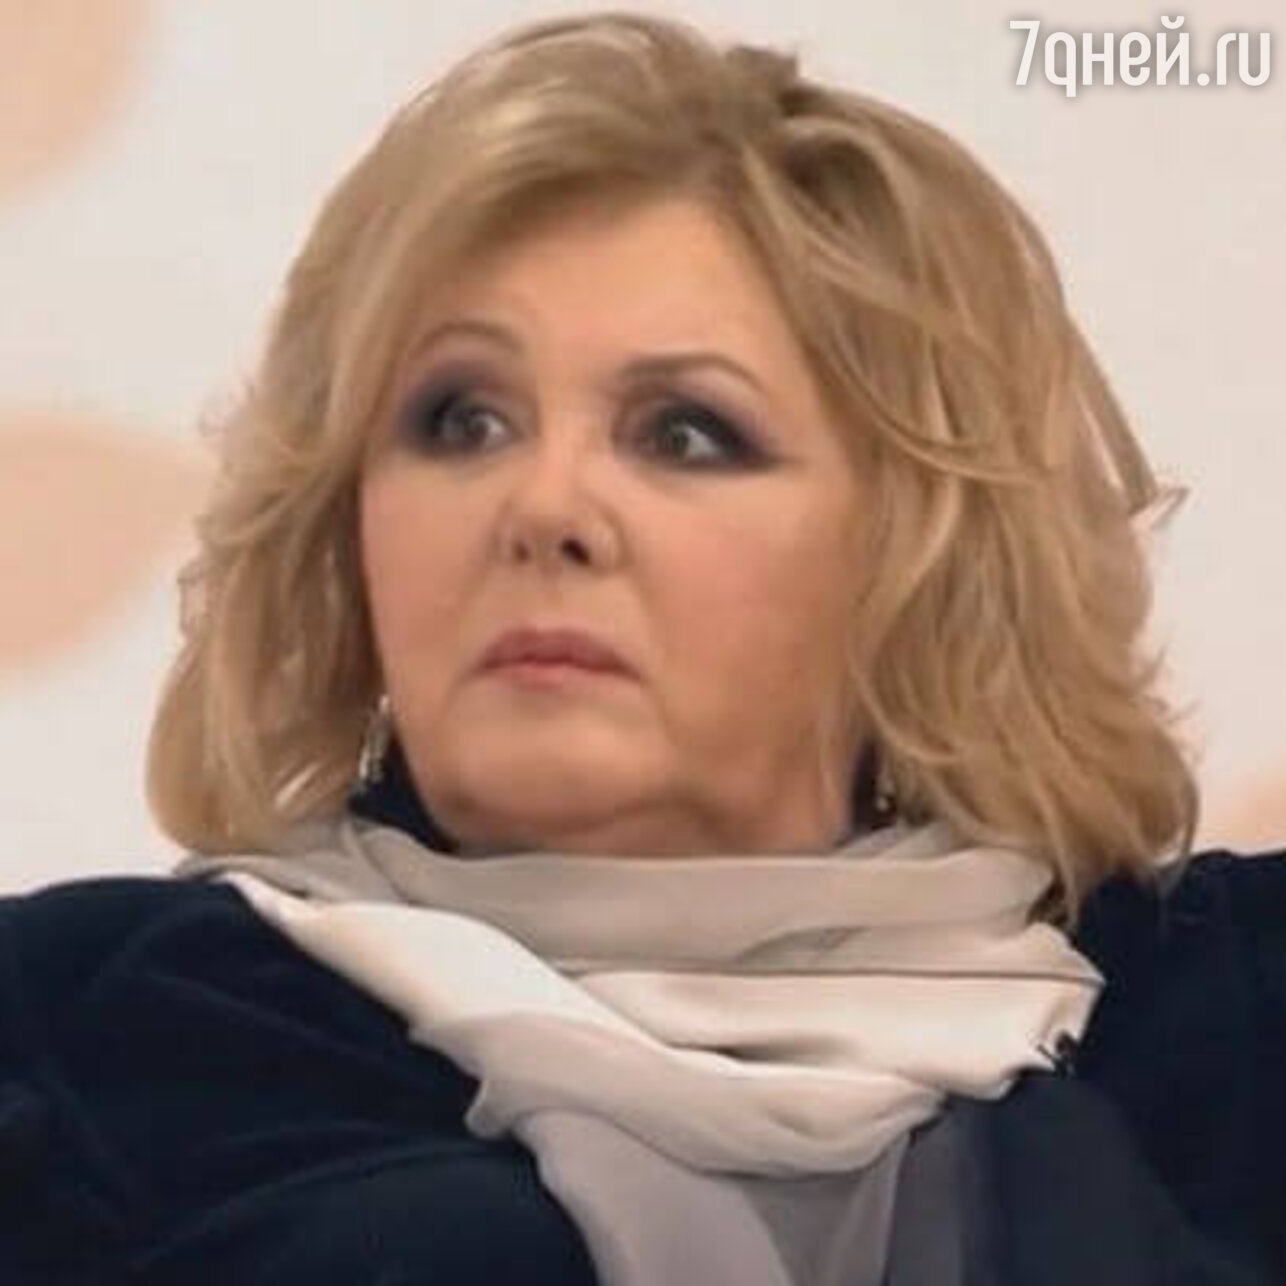 Наталья Селезнева сейчас 2020